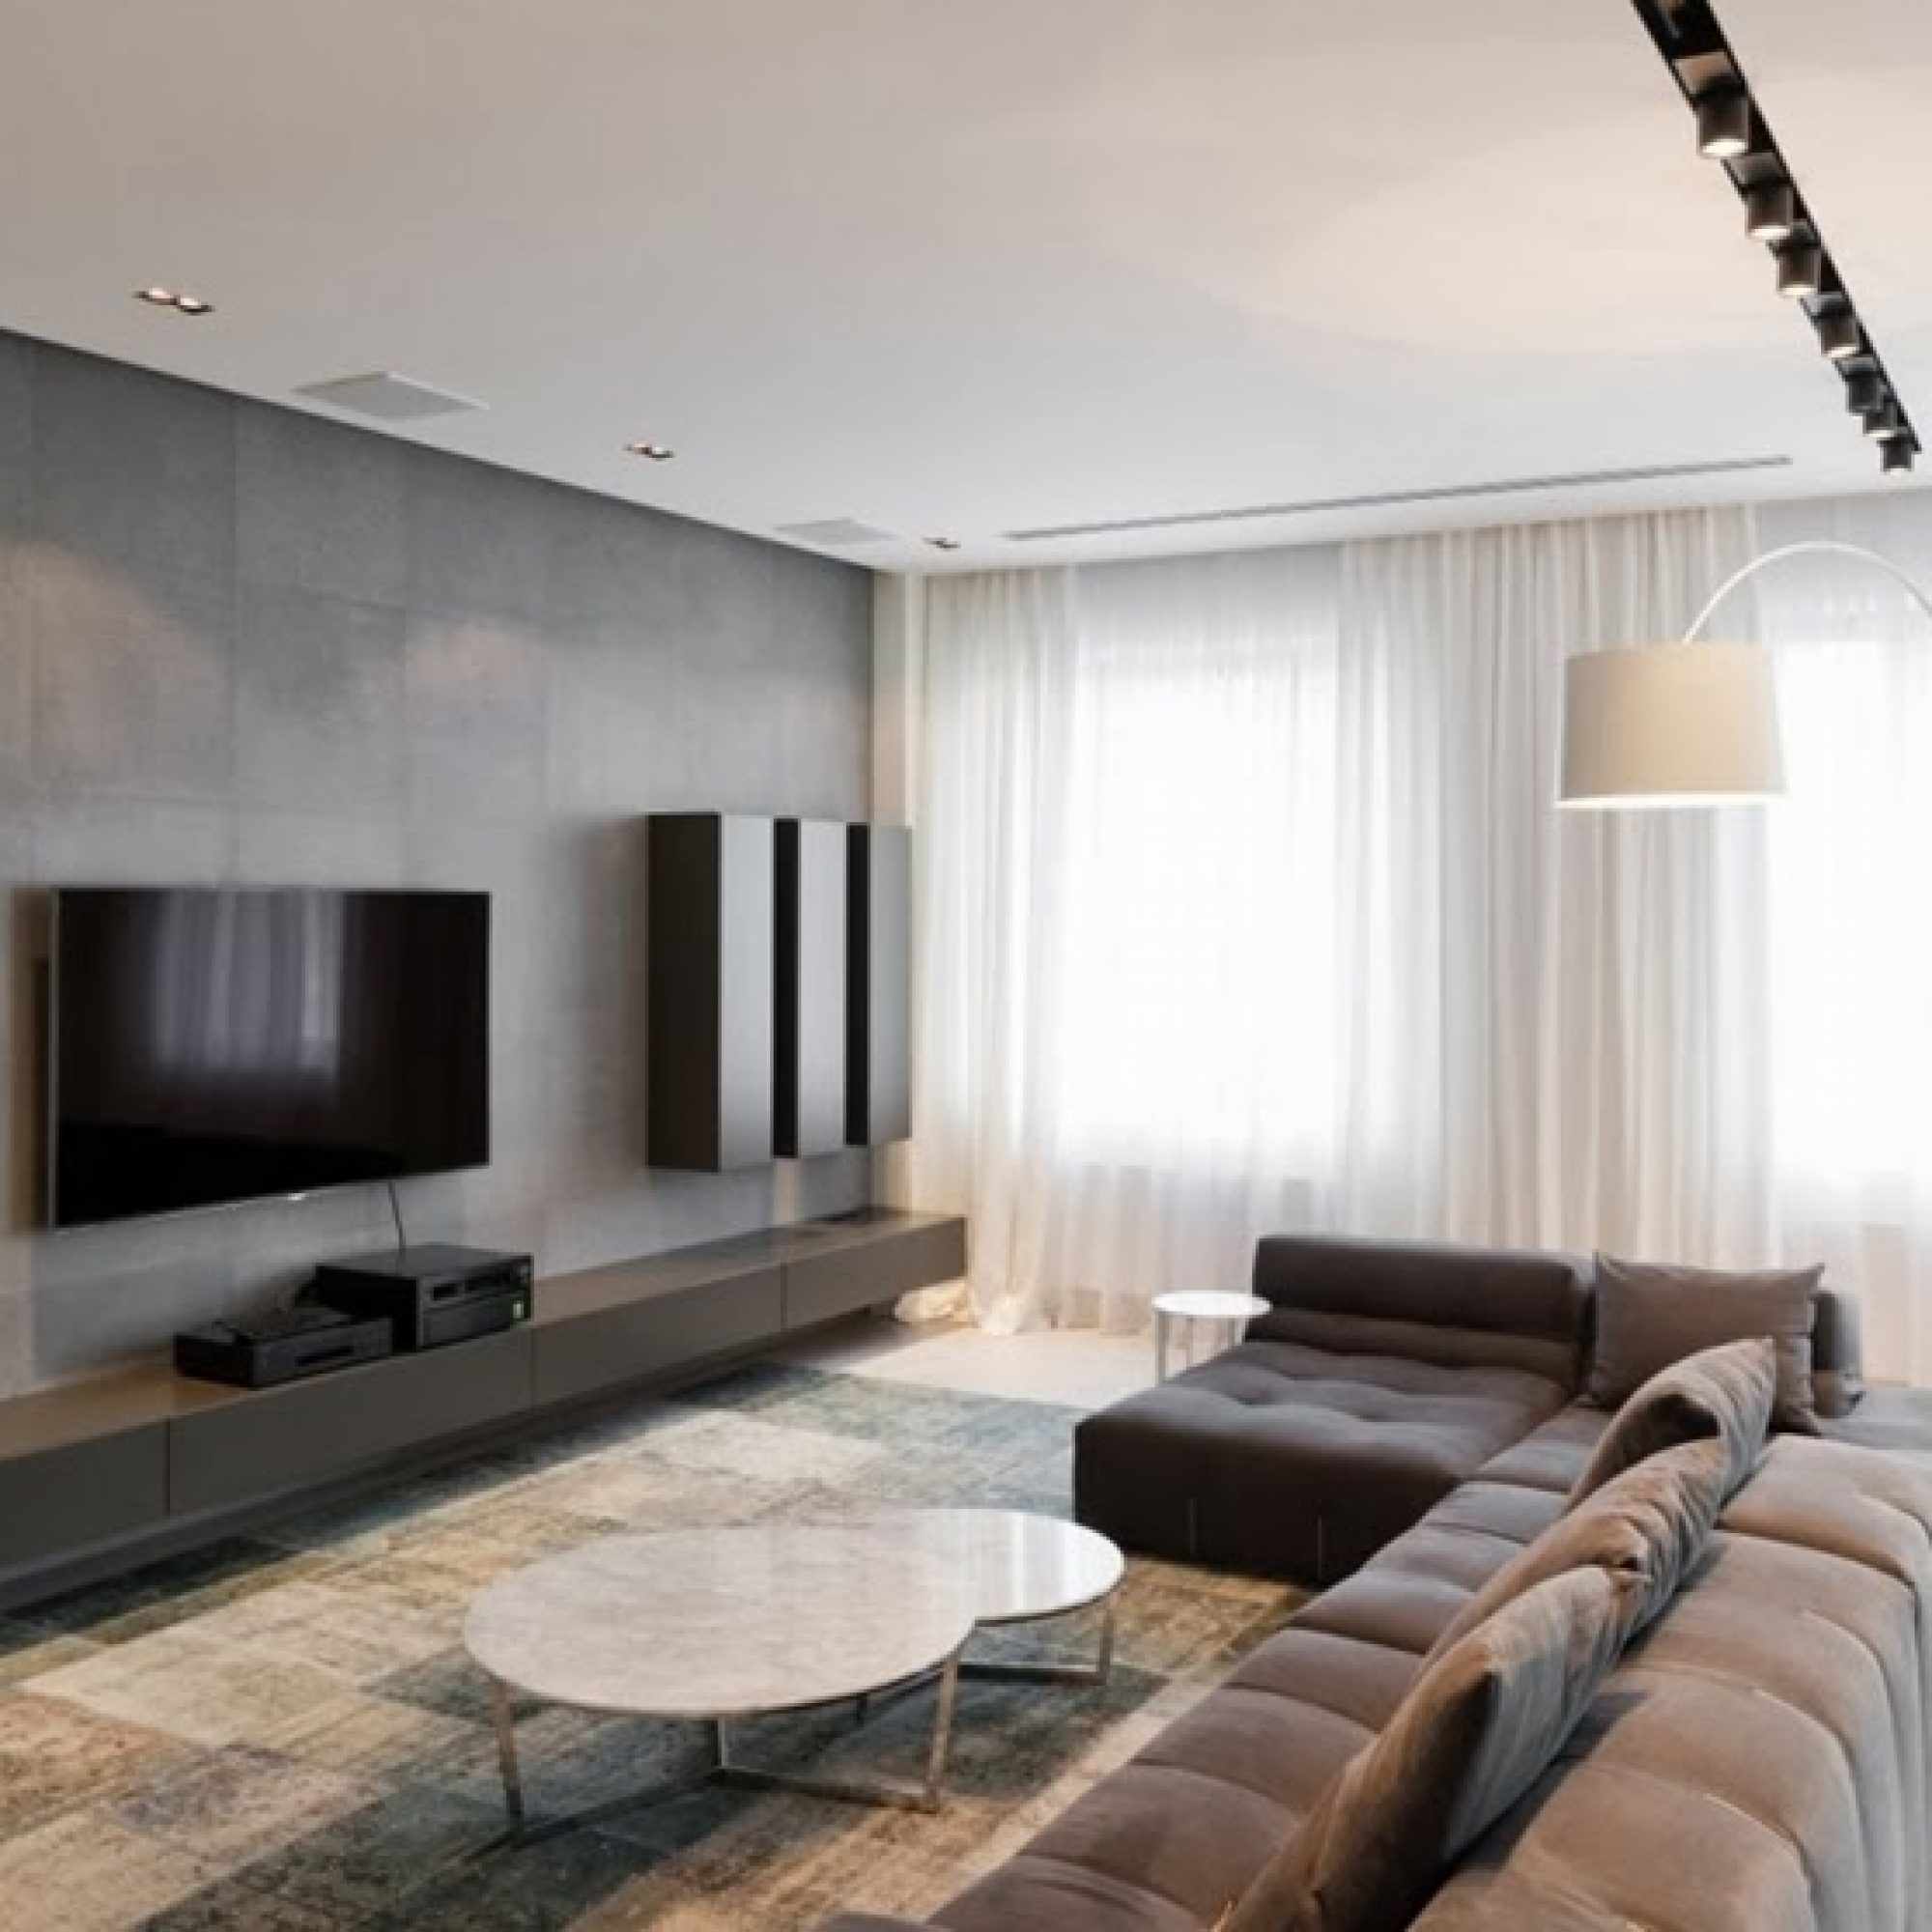 die idee, ein lichtdesign eines wohnzimmers im stil des minimalismus anzuwenden